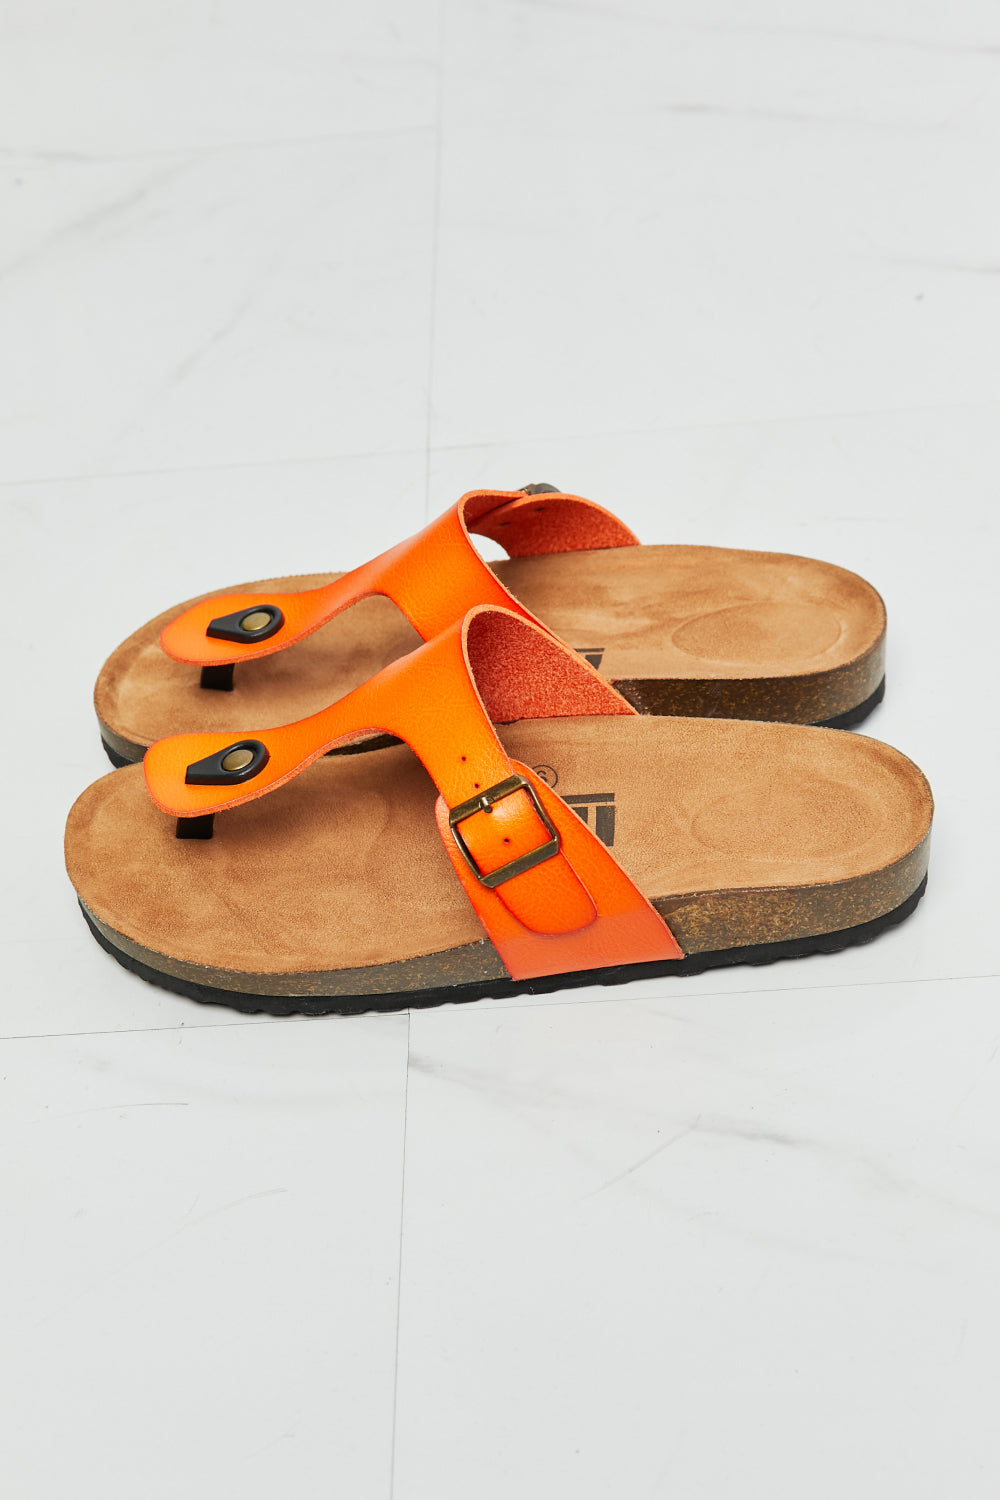 MMShoes Drift Away T-Strap Flip-Flop in Orange - FunkyPeacockStore (Store description)